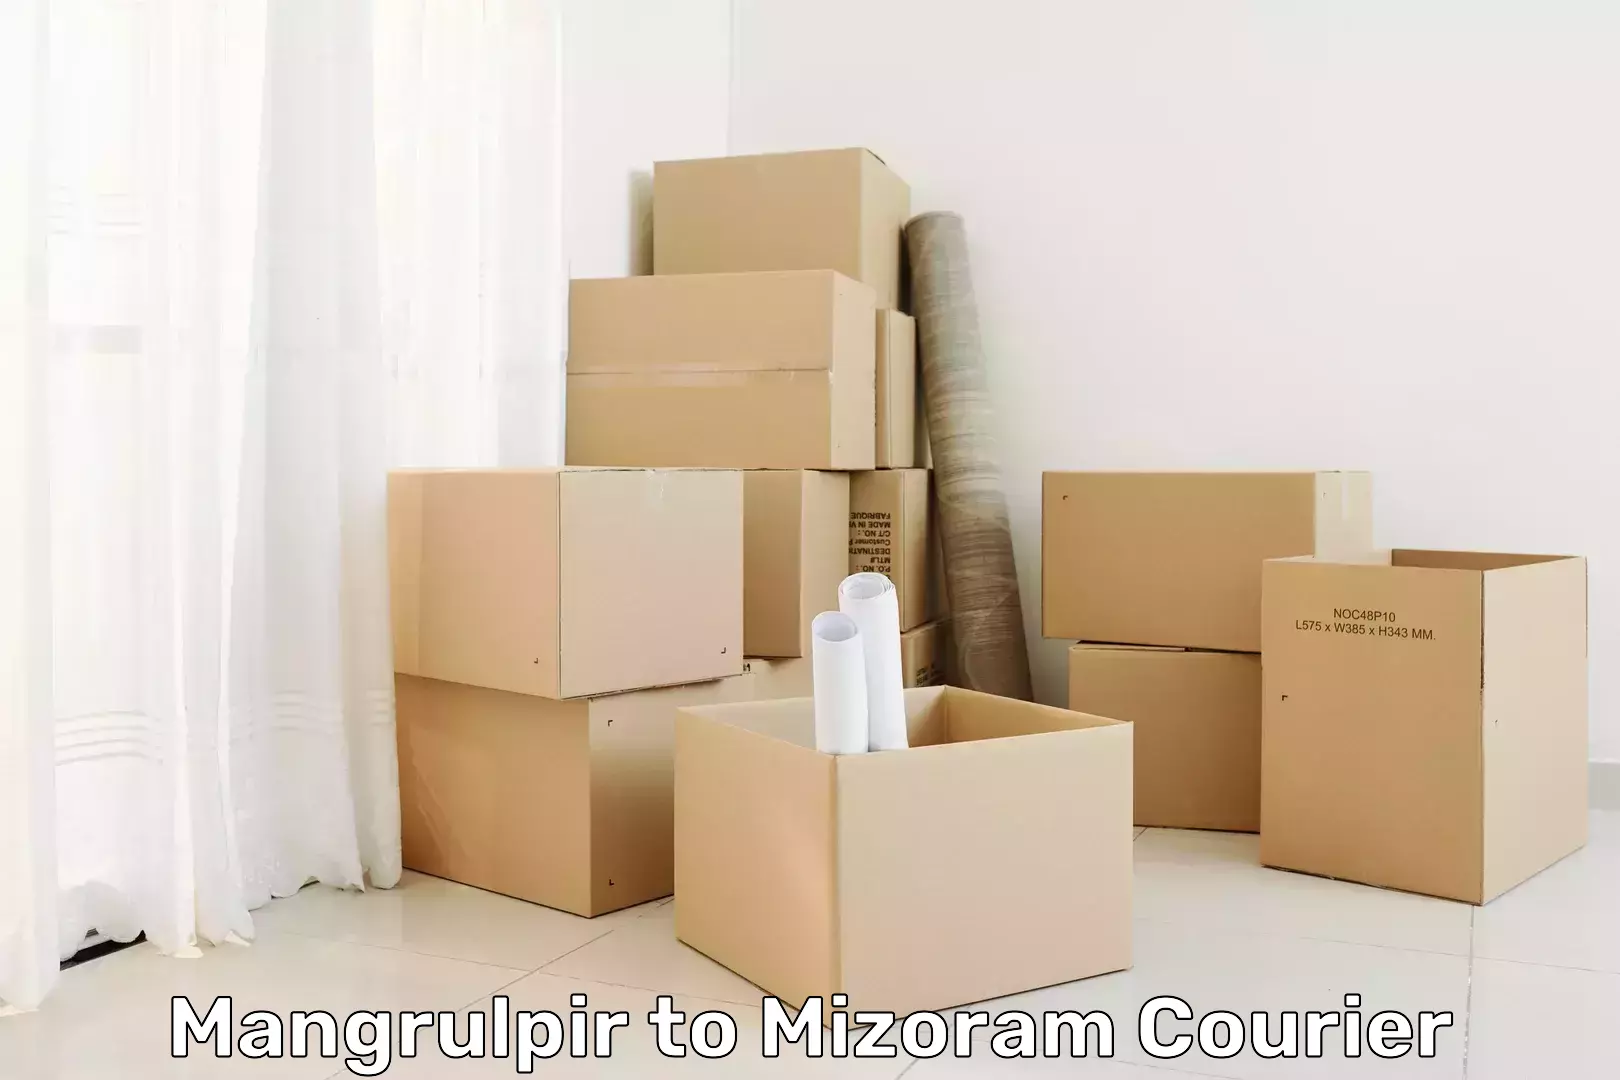 Custom courier packaging in Mangrulpir to Mizoram